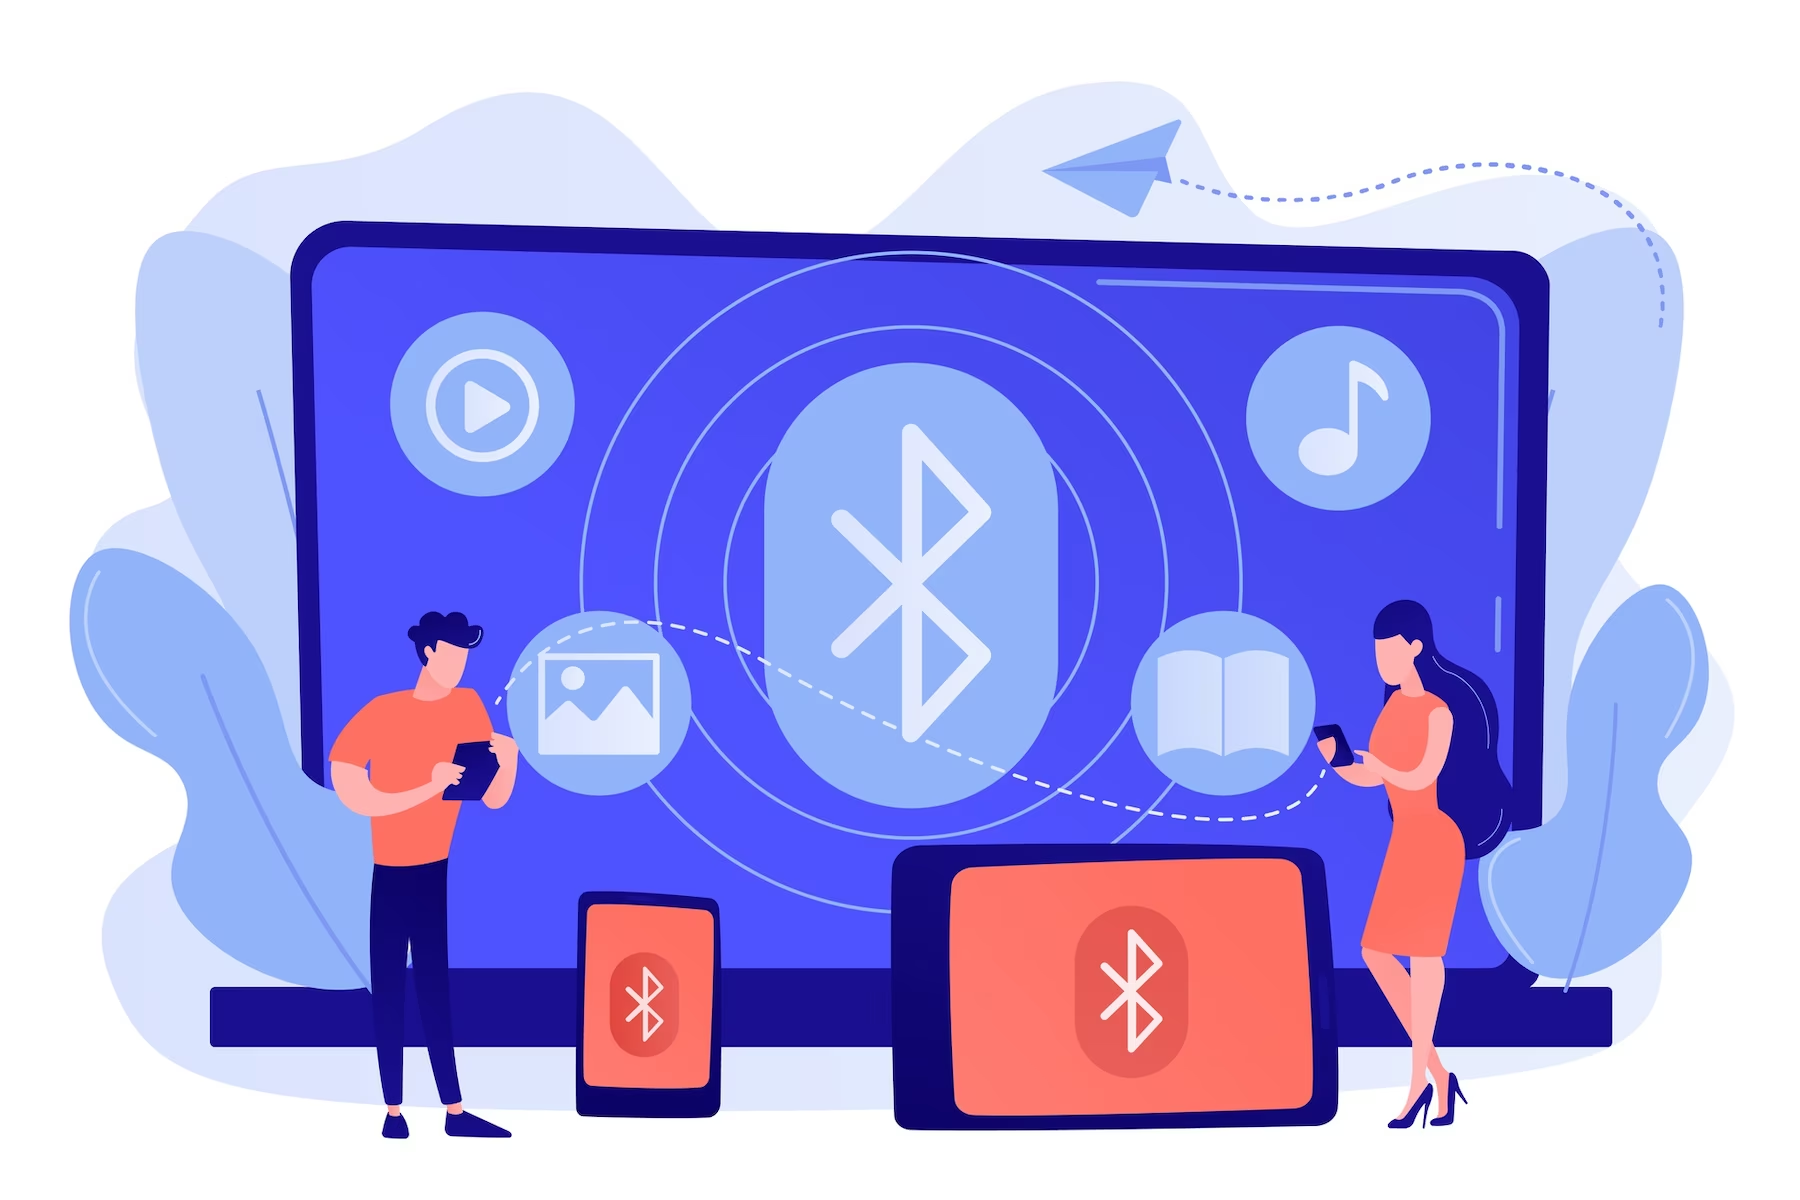 Balises Bluetooth : comment elles fonctionnent et ce qu’elles peuvent faire